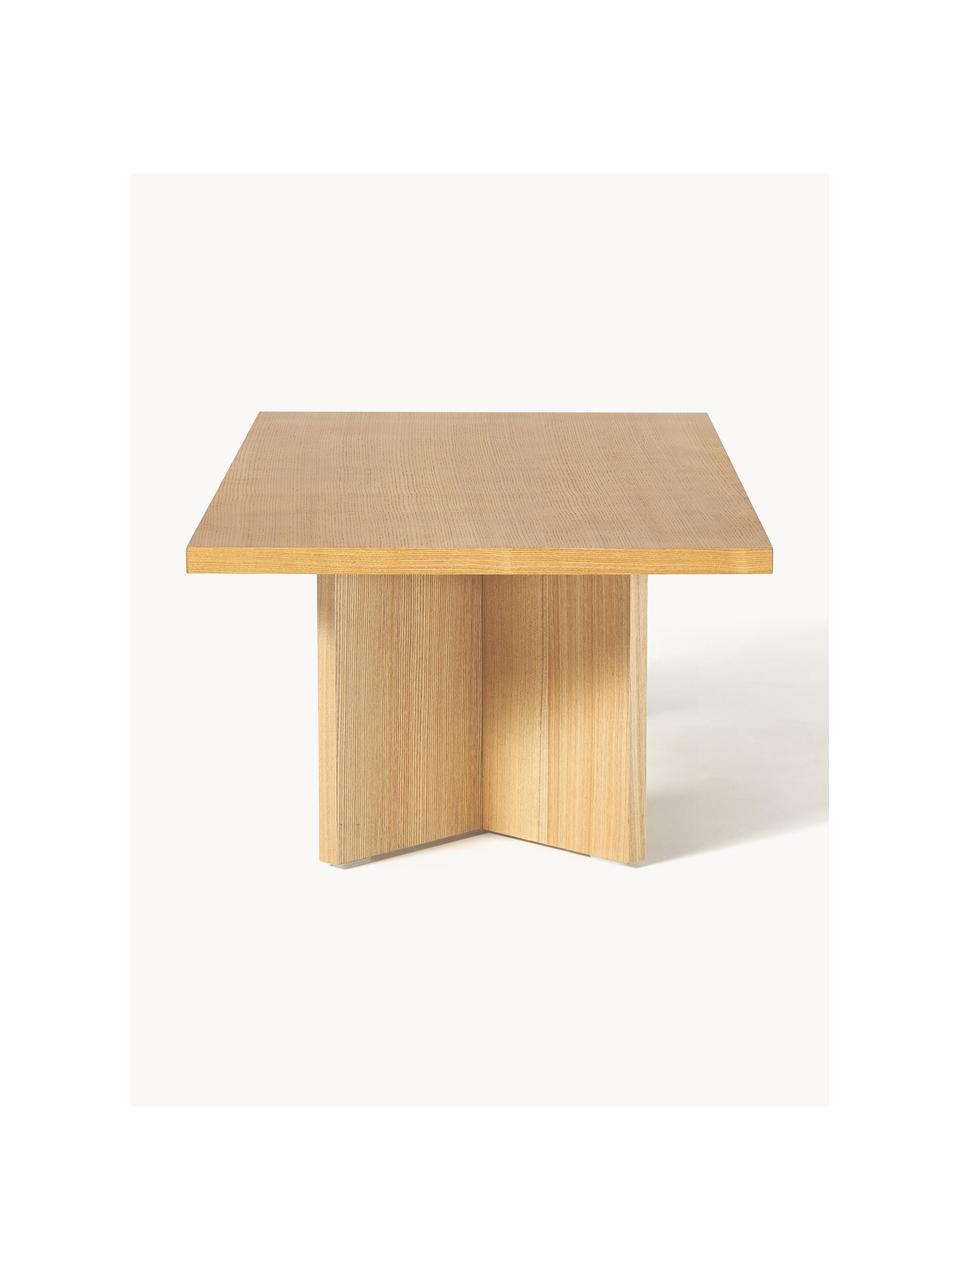 Dřevěný konferenční stolek Toni, Lakovaná MDF deska (dřevovláknitá deska střední hustoty) s dubovou dýhou

Tento produkt je vyroben z udržitelných zdrojů dřeva s certifikací FSC®., Jasanové dřevo, Š 100 cm, H 55 cm